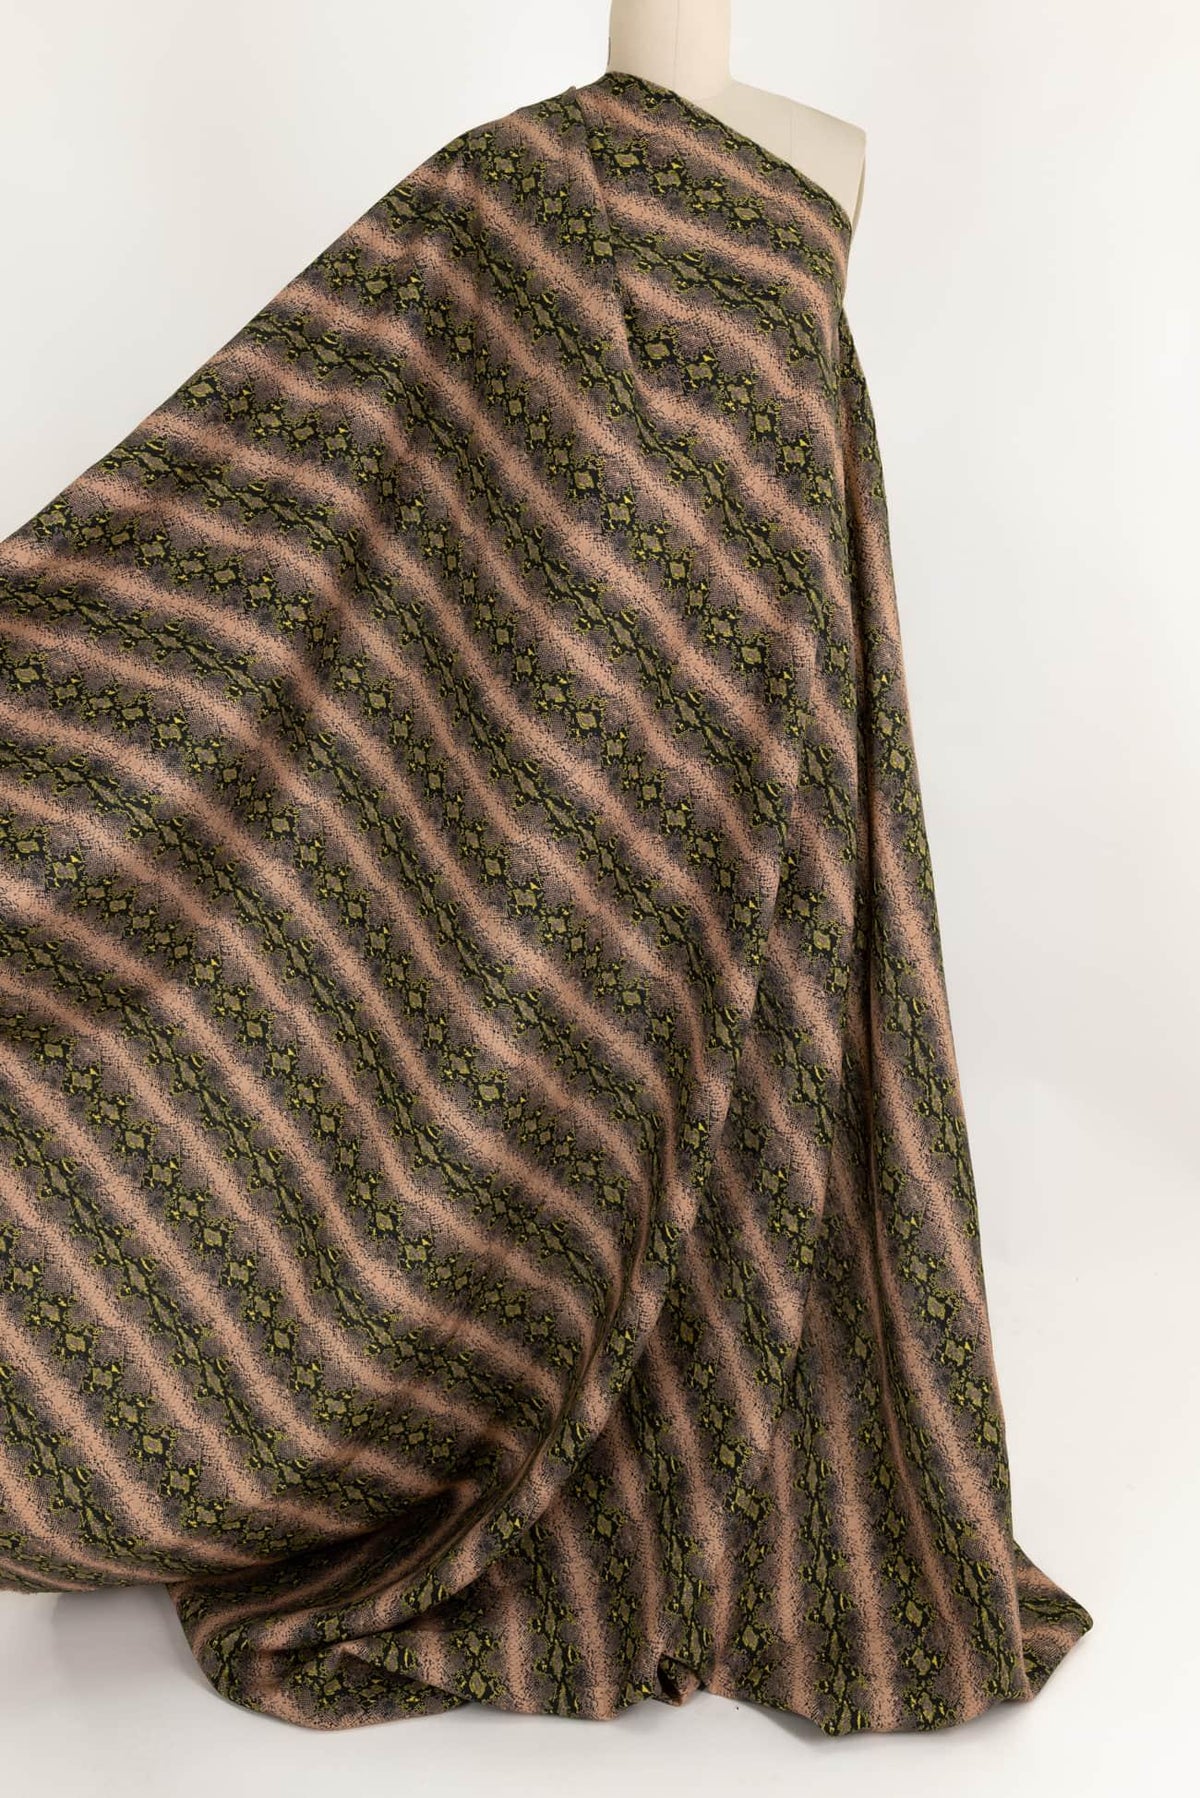 Peachskin Linen Woven - Marcy Tilton Fabrics